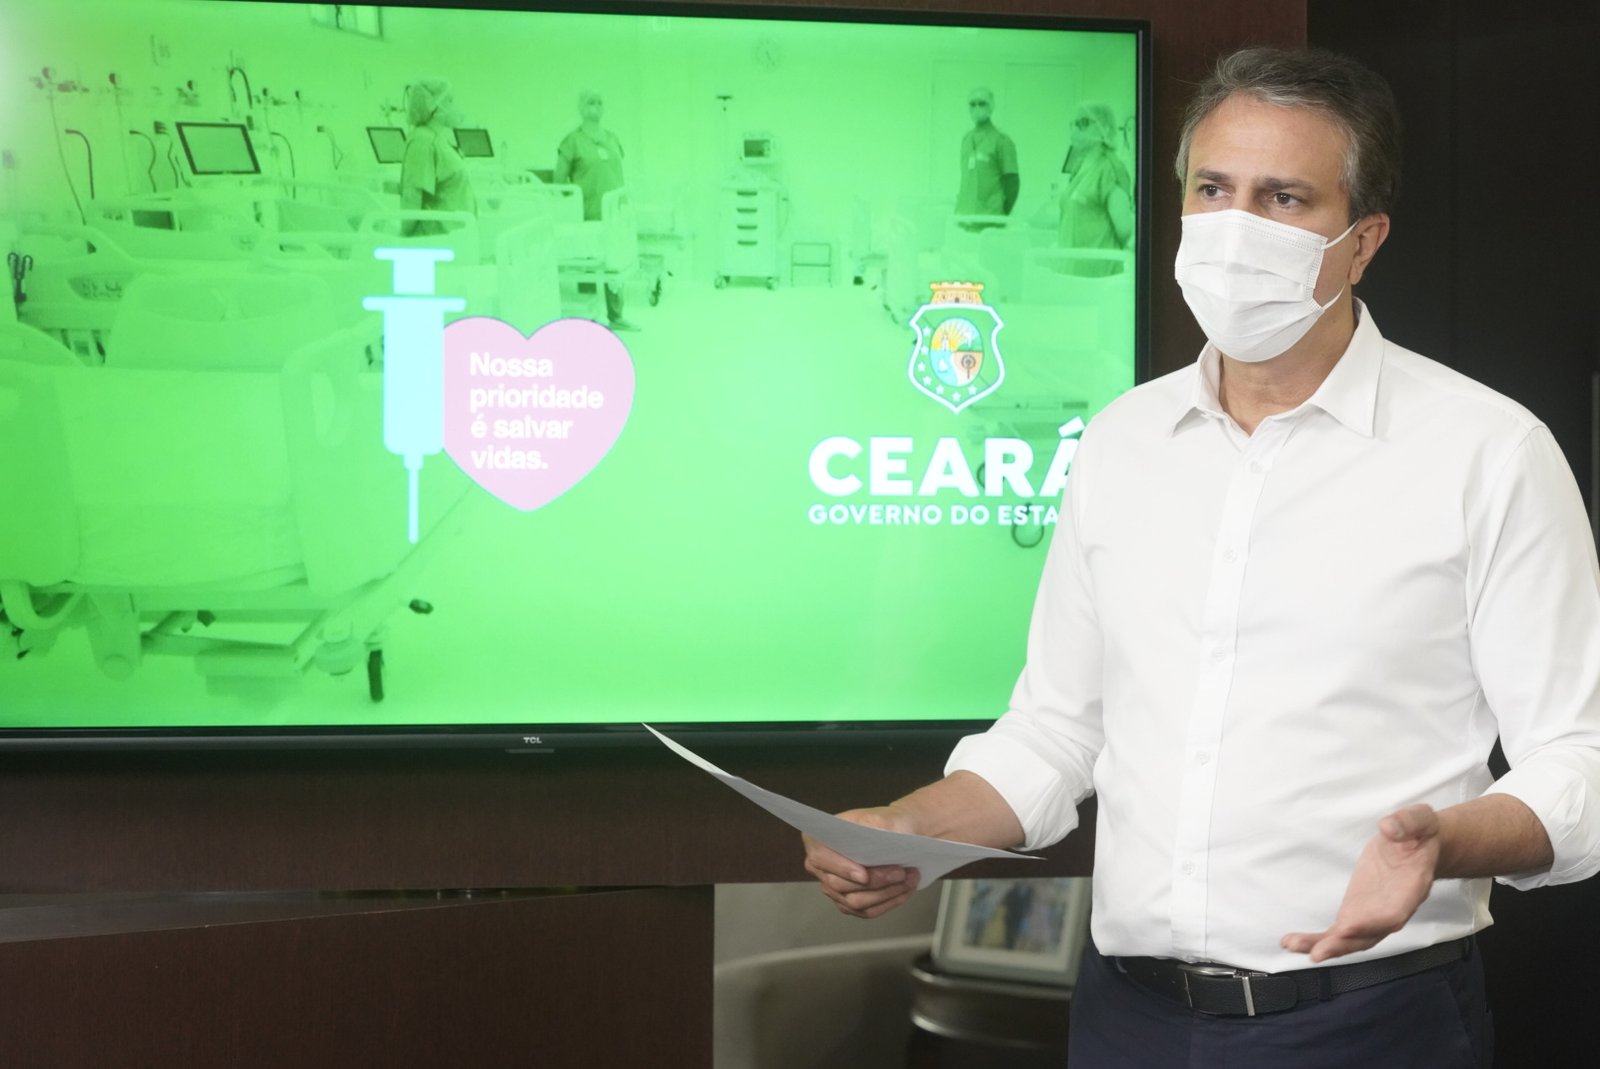 Pandemia: Novo decreto avança na flexibilização de atividades econômicas e sociais no Ceará